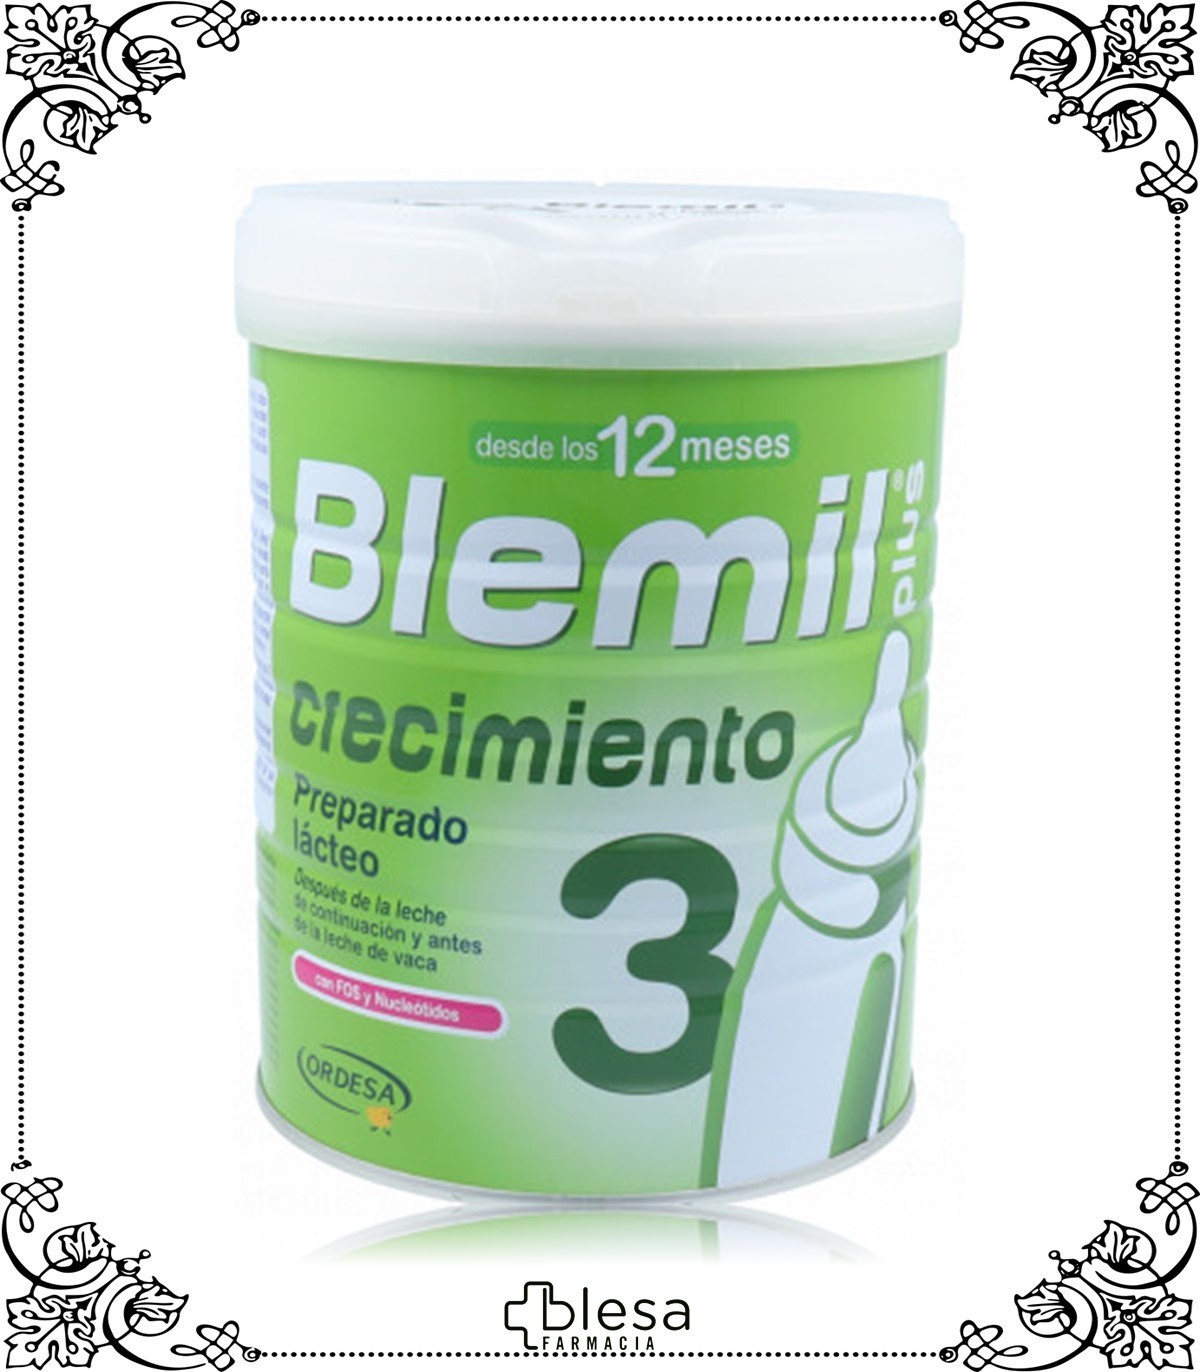 Blemil Plus Optimum 3 - Preparado Lácteo para bebés a partir de 12